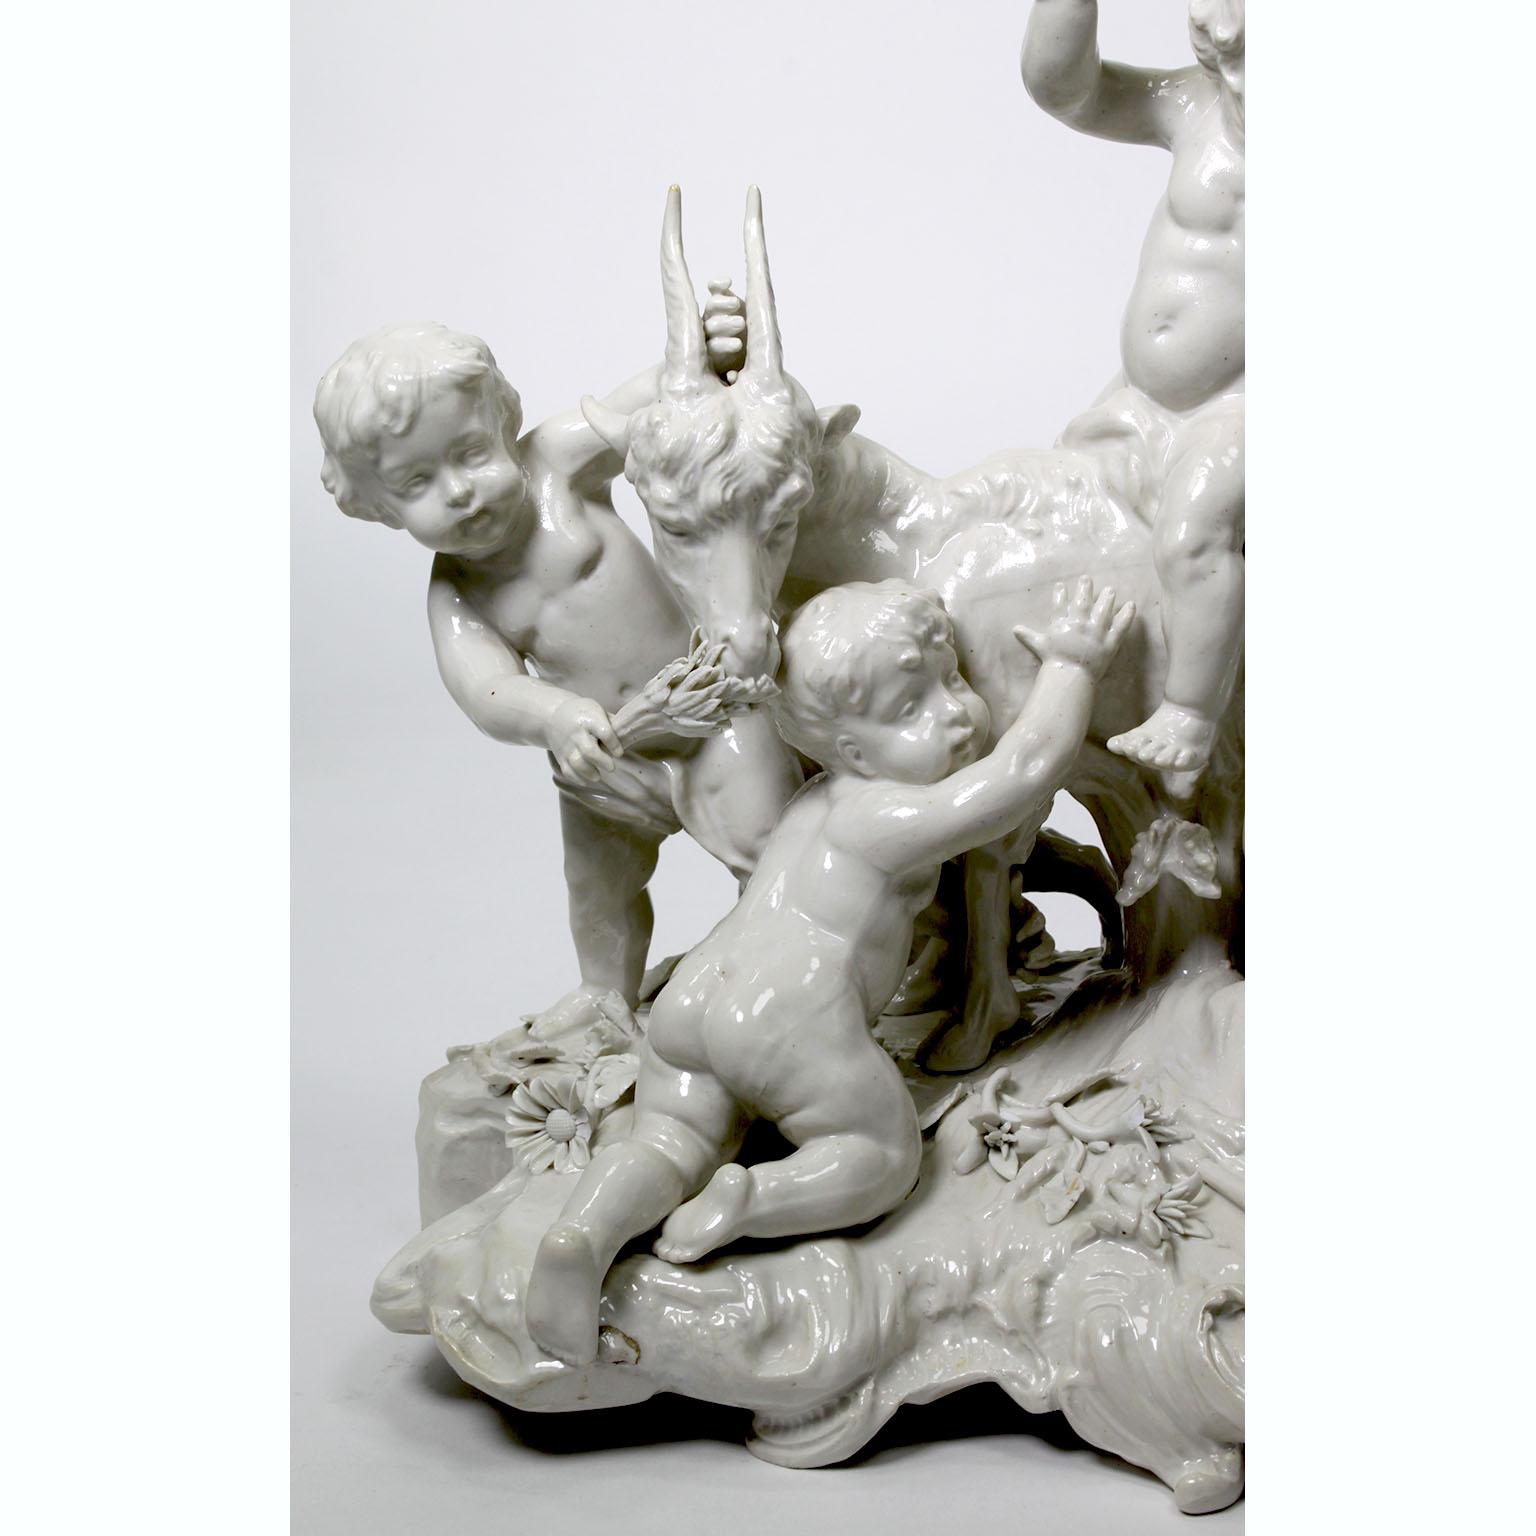 Eine charmante, skurrile, weiß glasierte Porzellangruppe aus dem 19. und 20. Jahrhundert mit vier Putten, die mit einer Ziege spielen, wahrscheinlich nach der Darstellung 